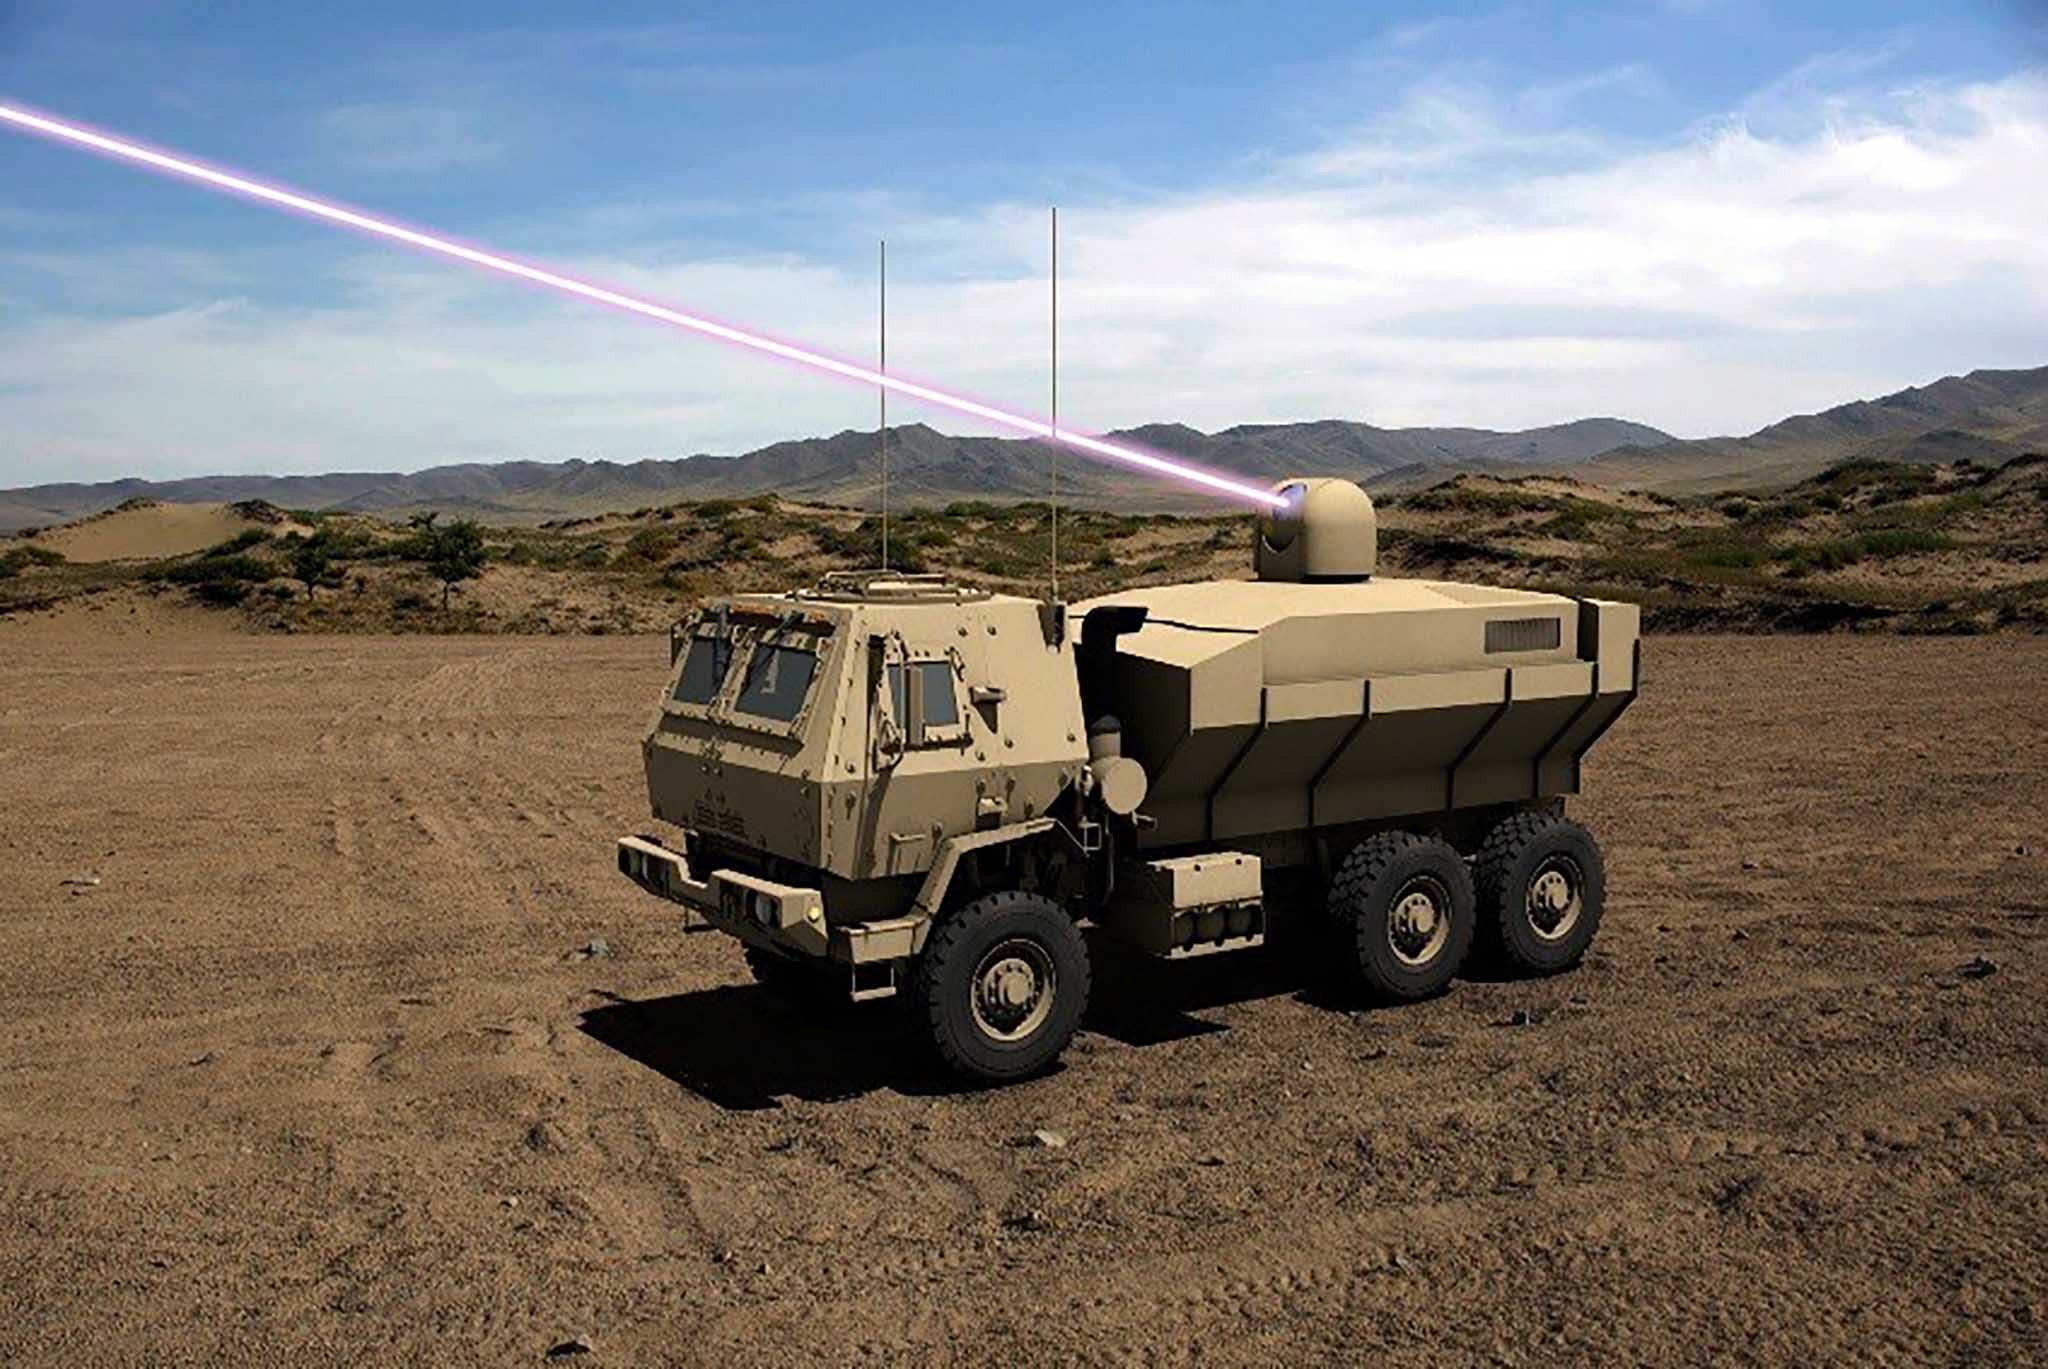 Lockheed Martin nâng công suất của hệ thống laser lên 100 kW, thử nghiệm trên xe FMTV năm 2022